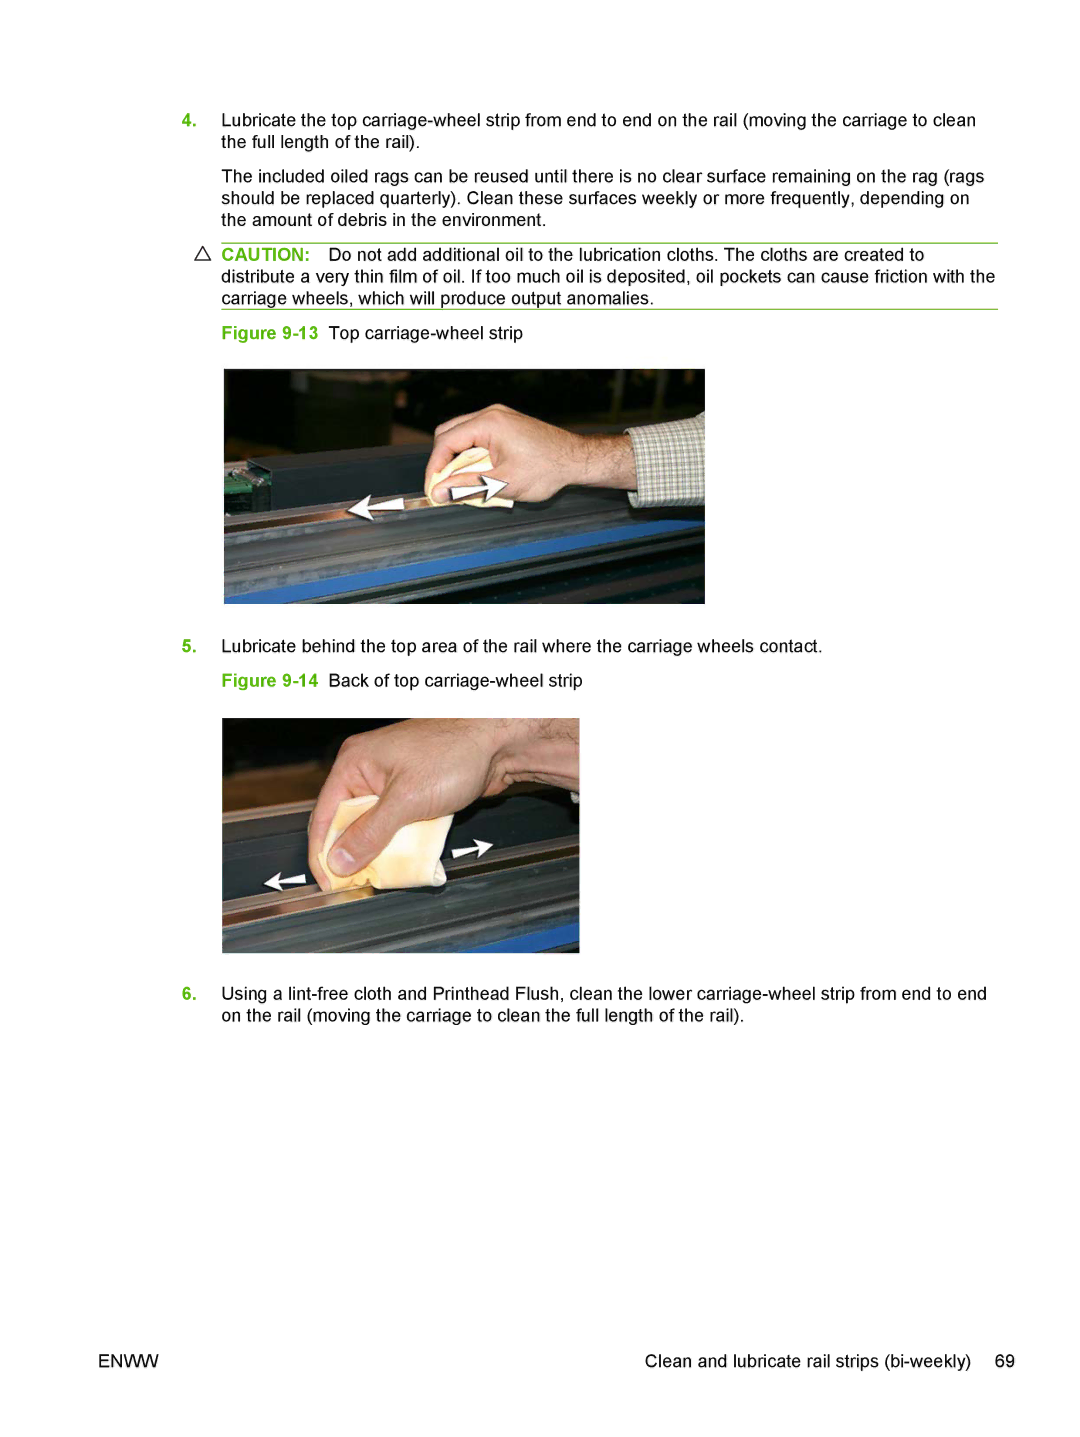 HP Scitex FB700 Industrial manual Clean and lubricate rail strips bi-weekly 